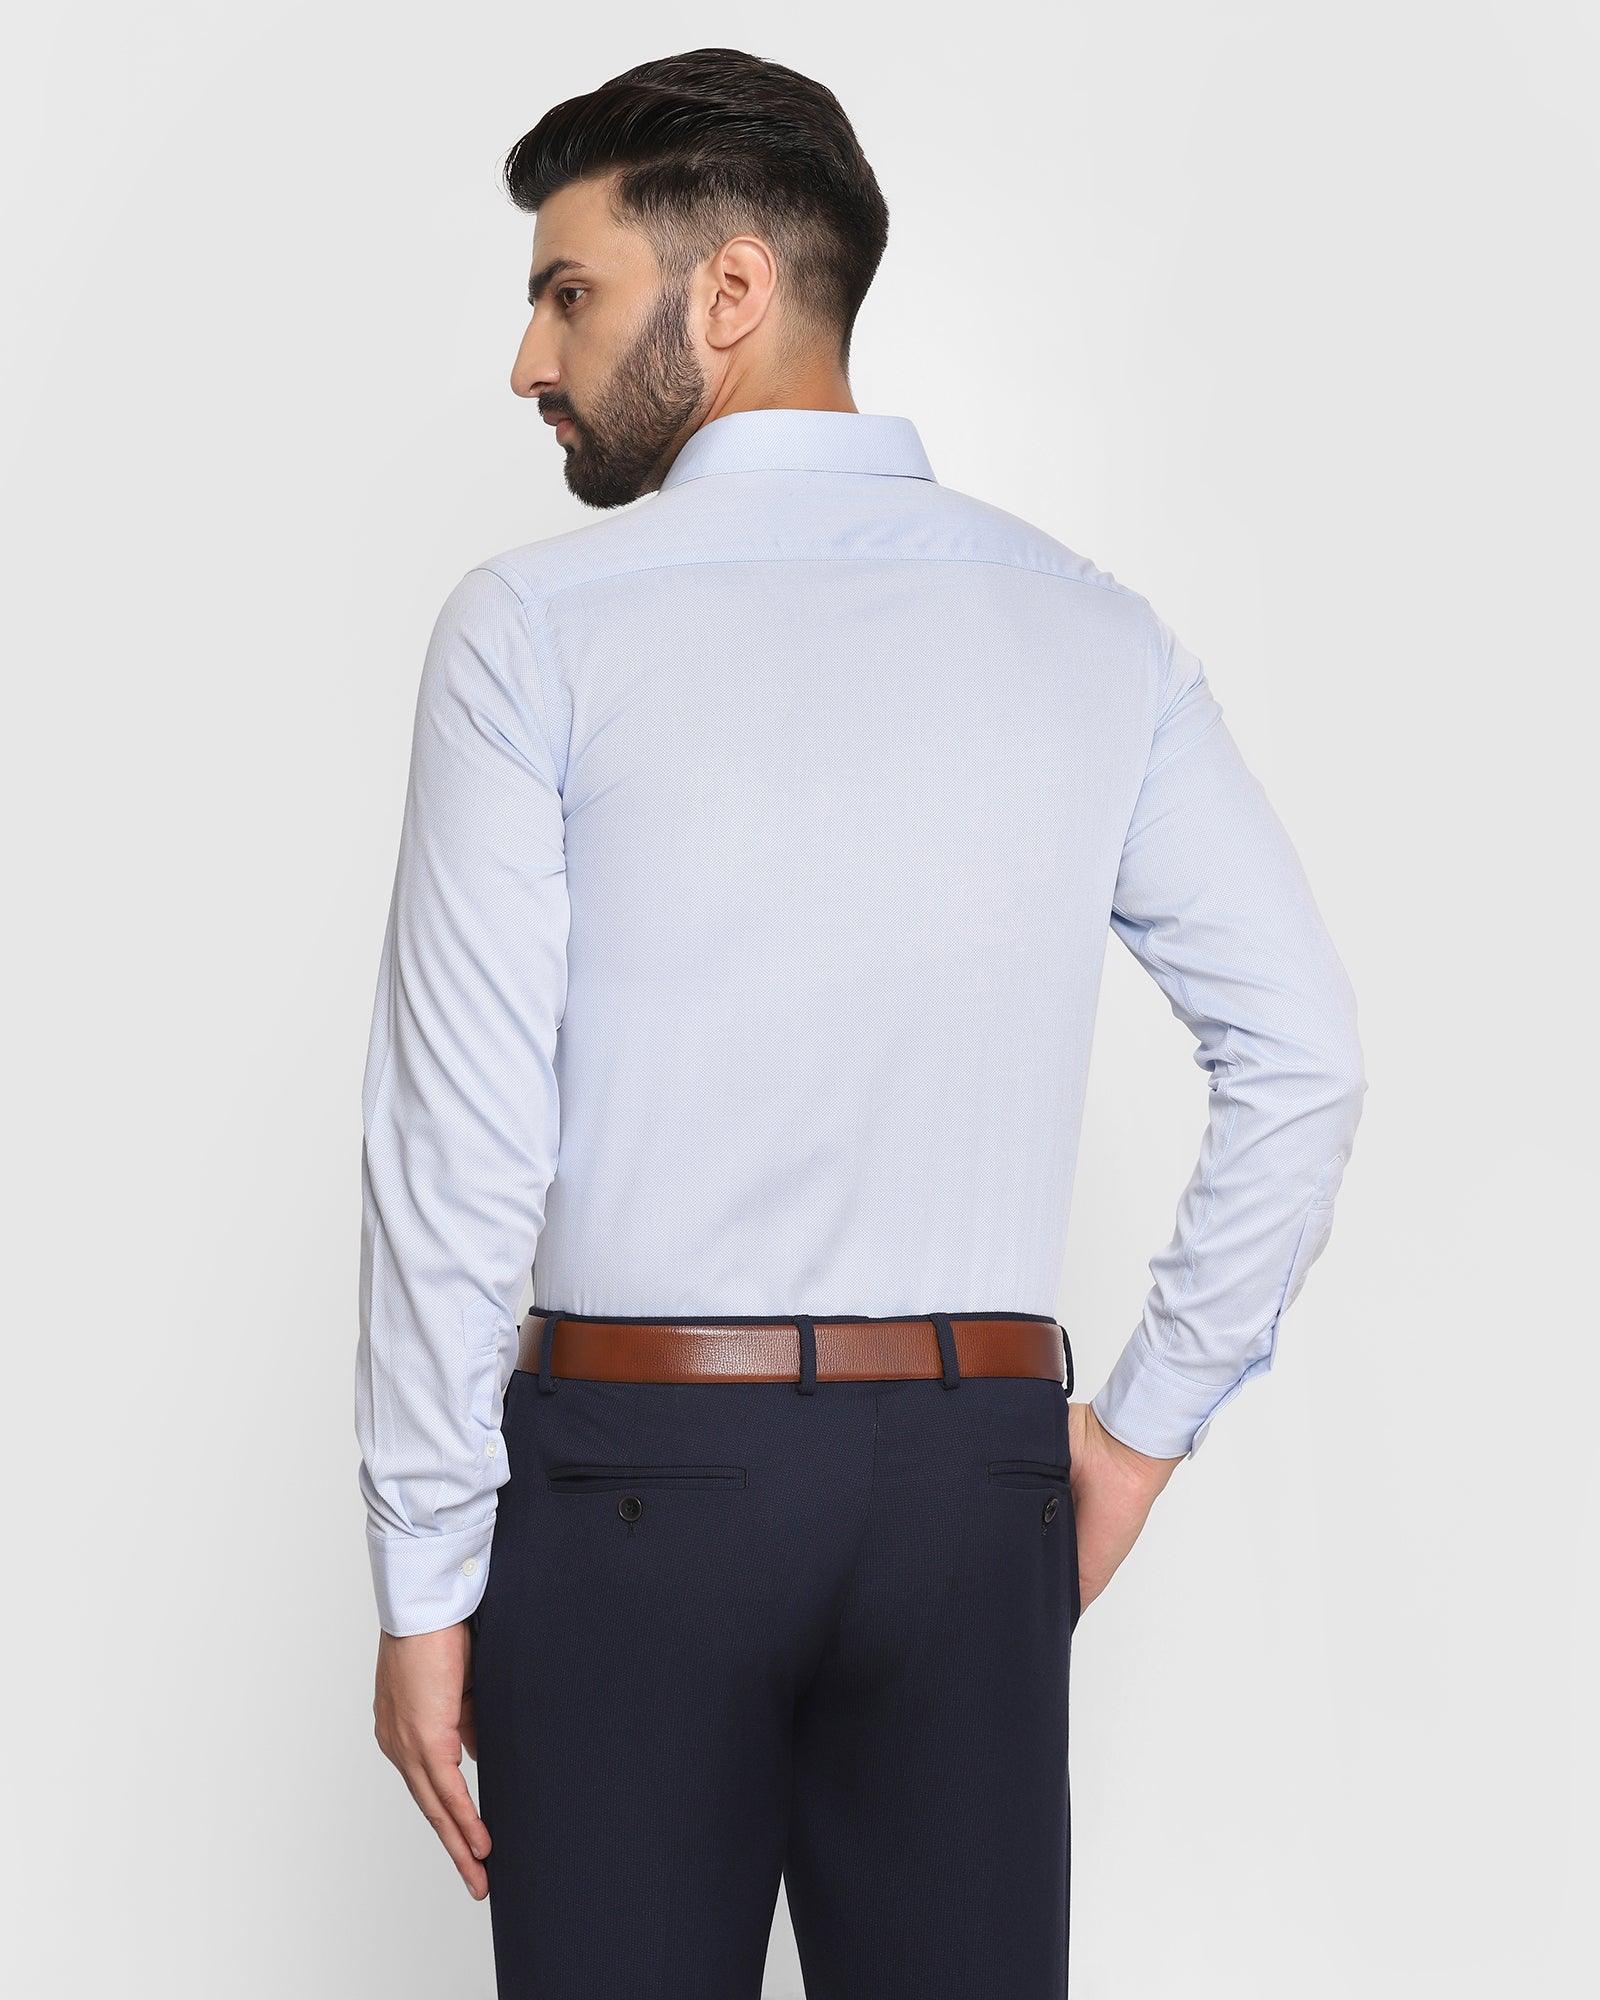 Formal Blue Textured Shirt - Setra